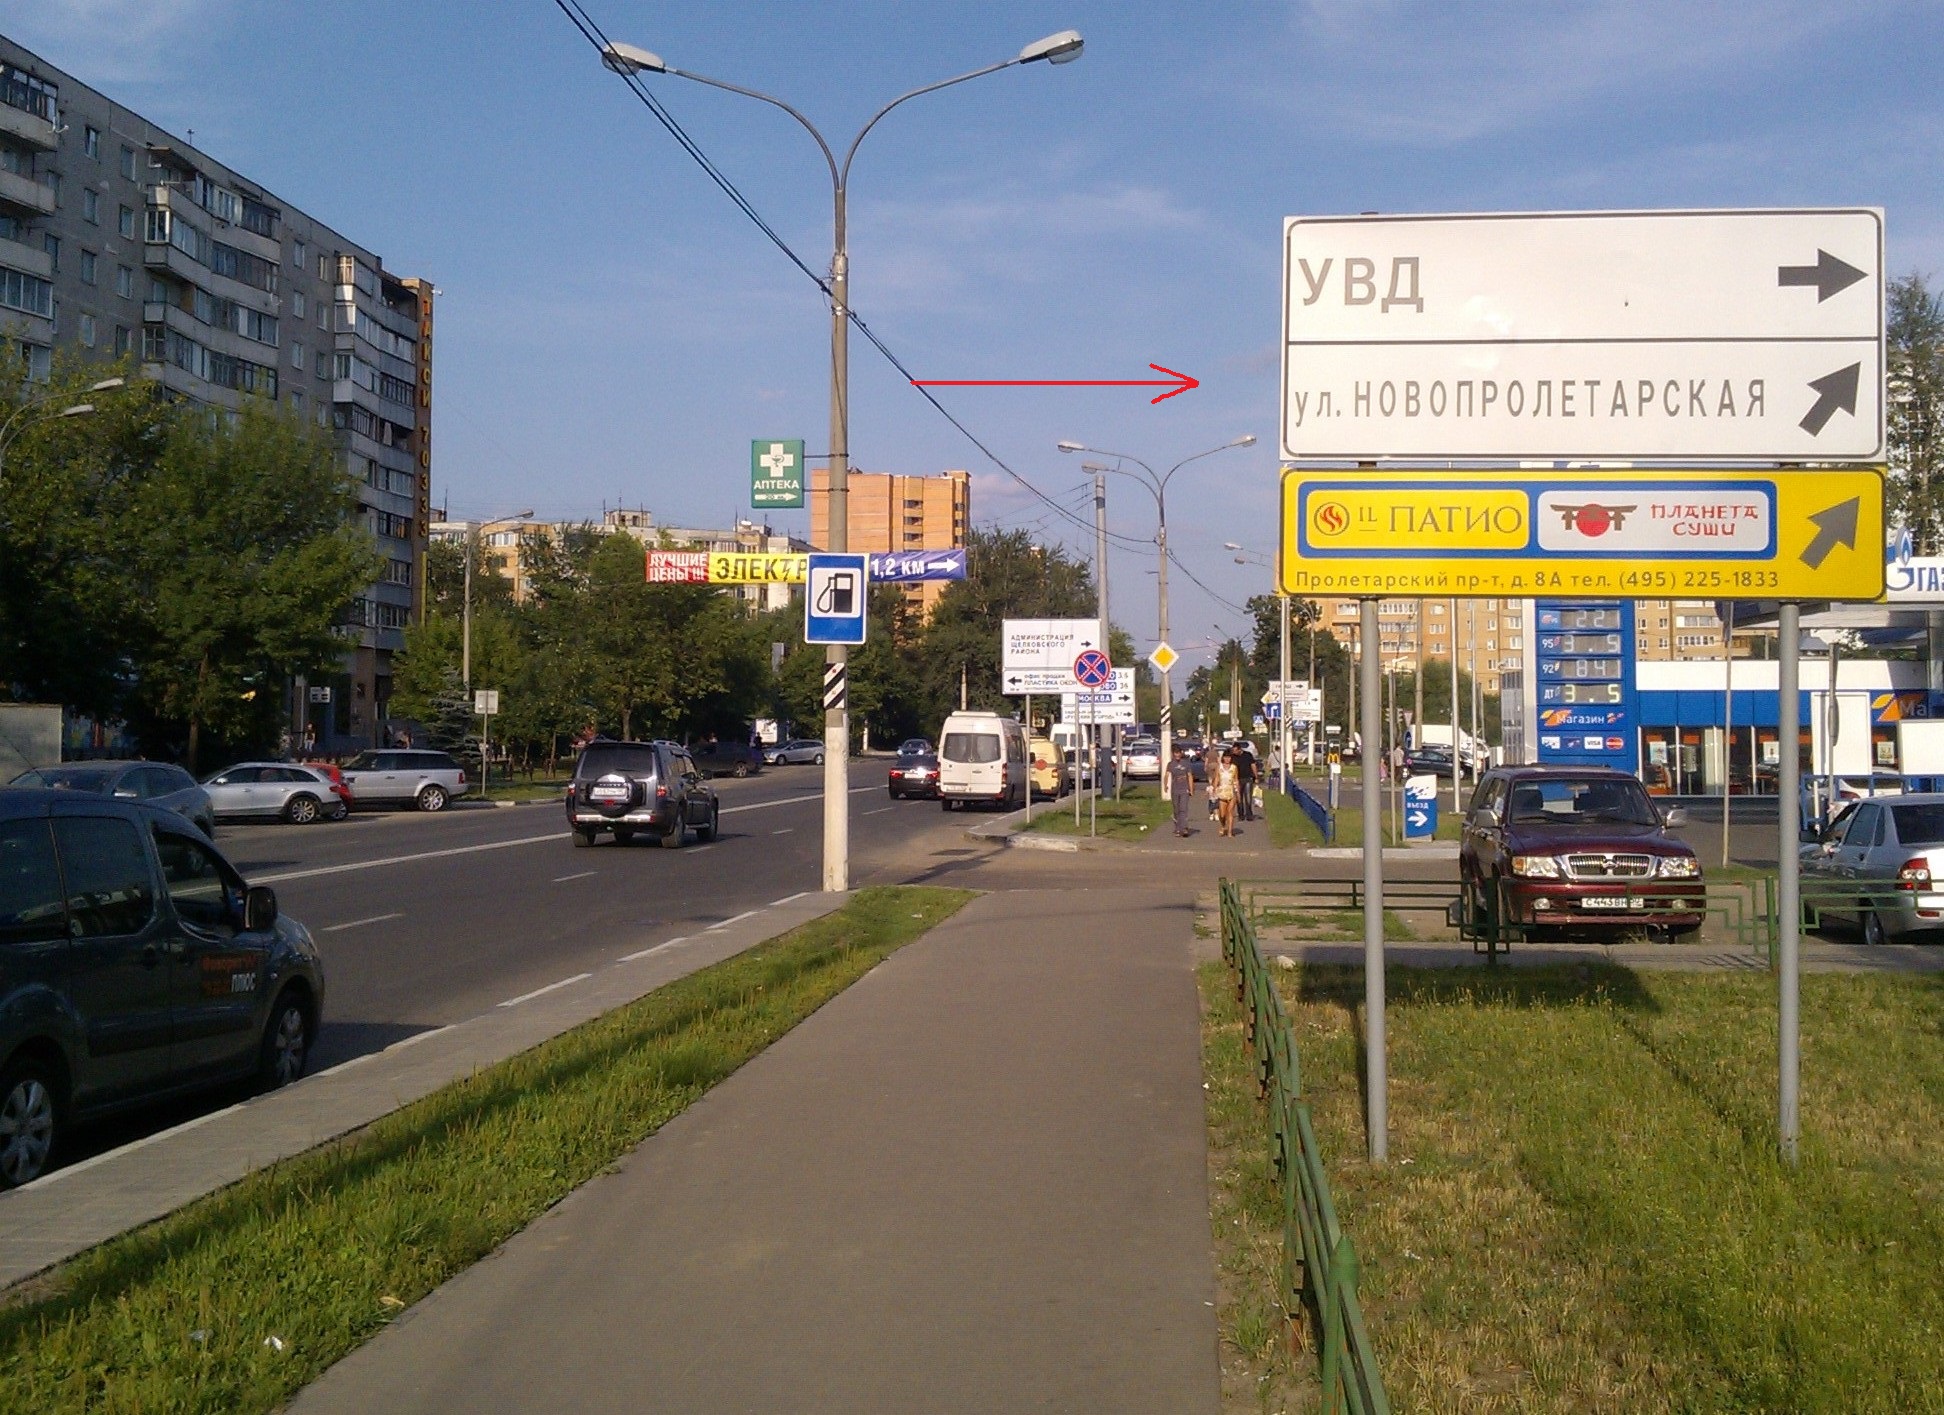 Улица Новопролетарская в Щелково